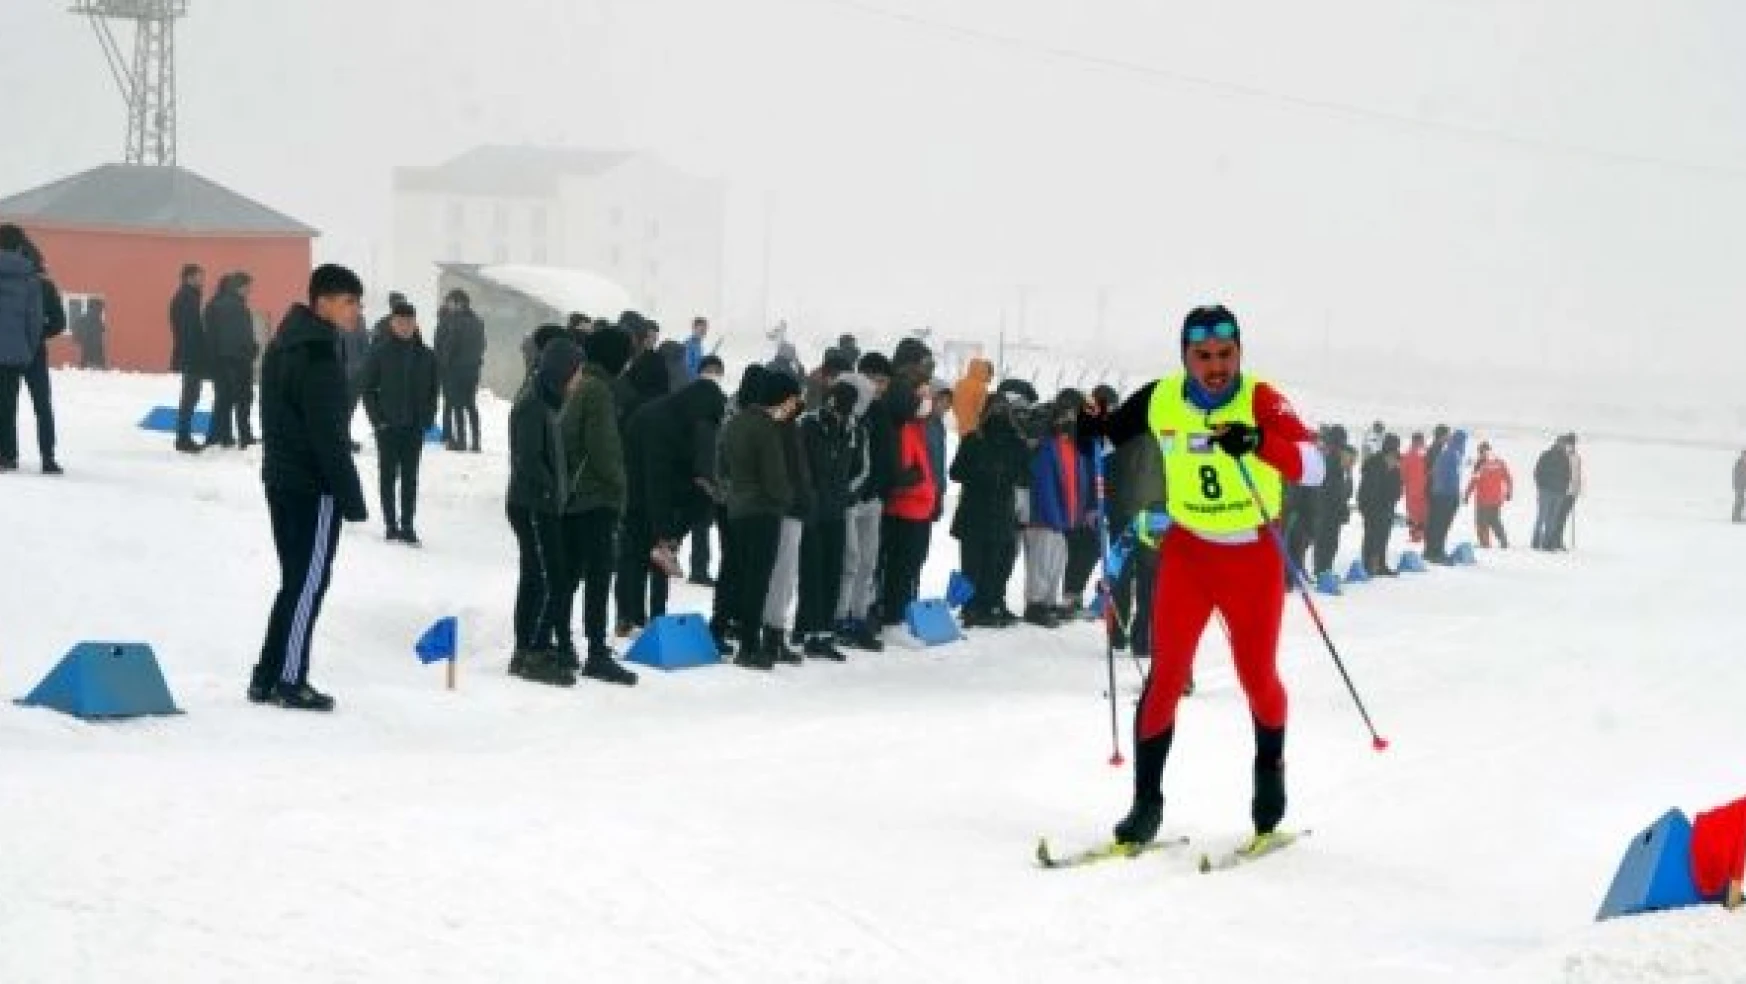 Muş'ta Türkiye ÜNİLİG Kayak Kuzey Disiplini Şampiyonası başladı